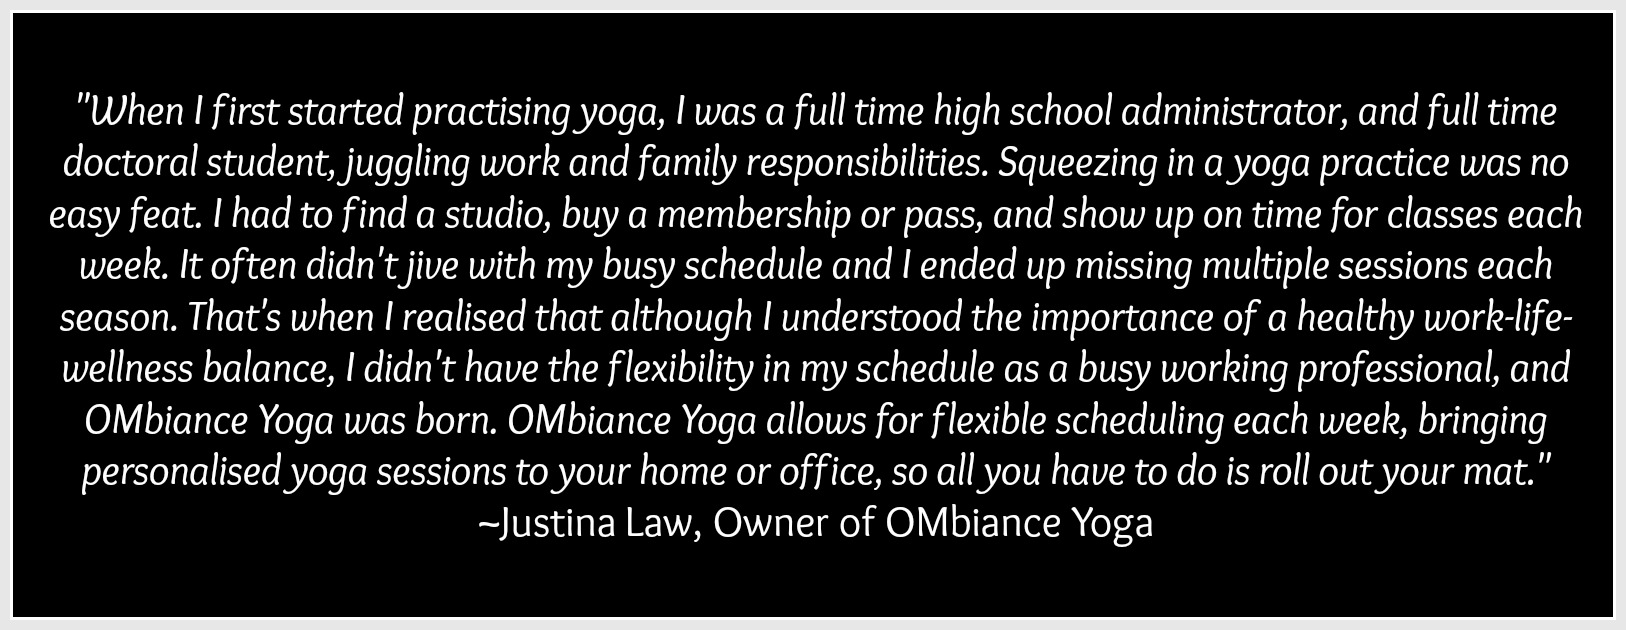 ombiance yoga story